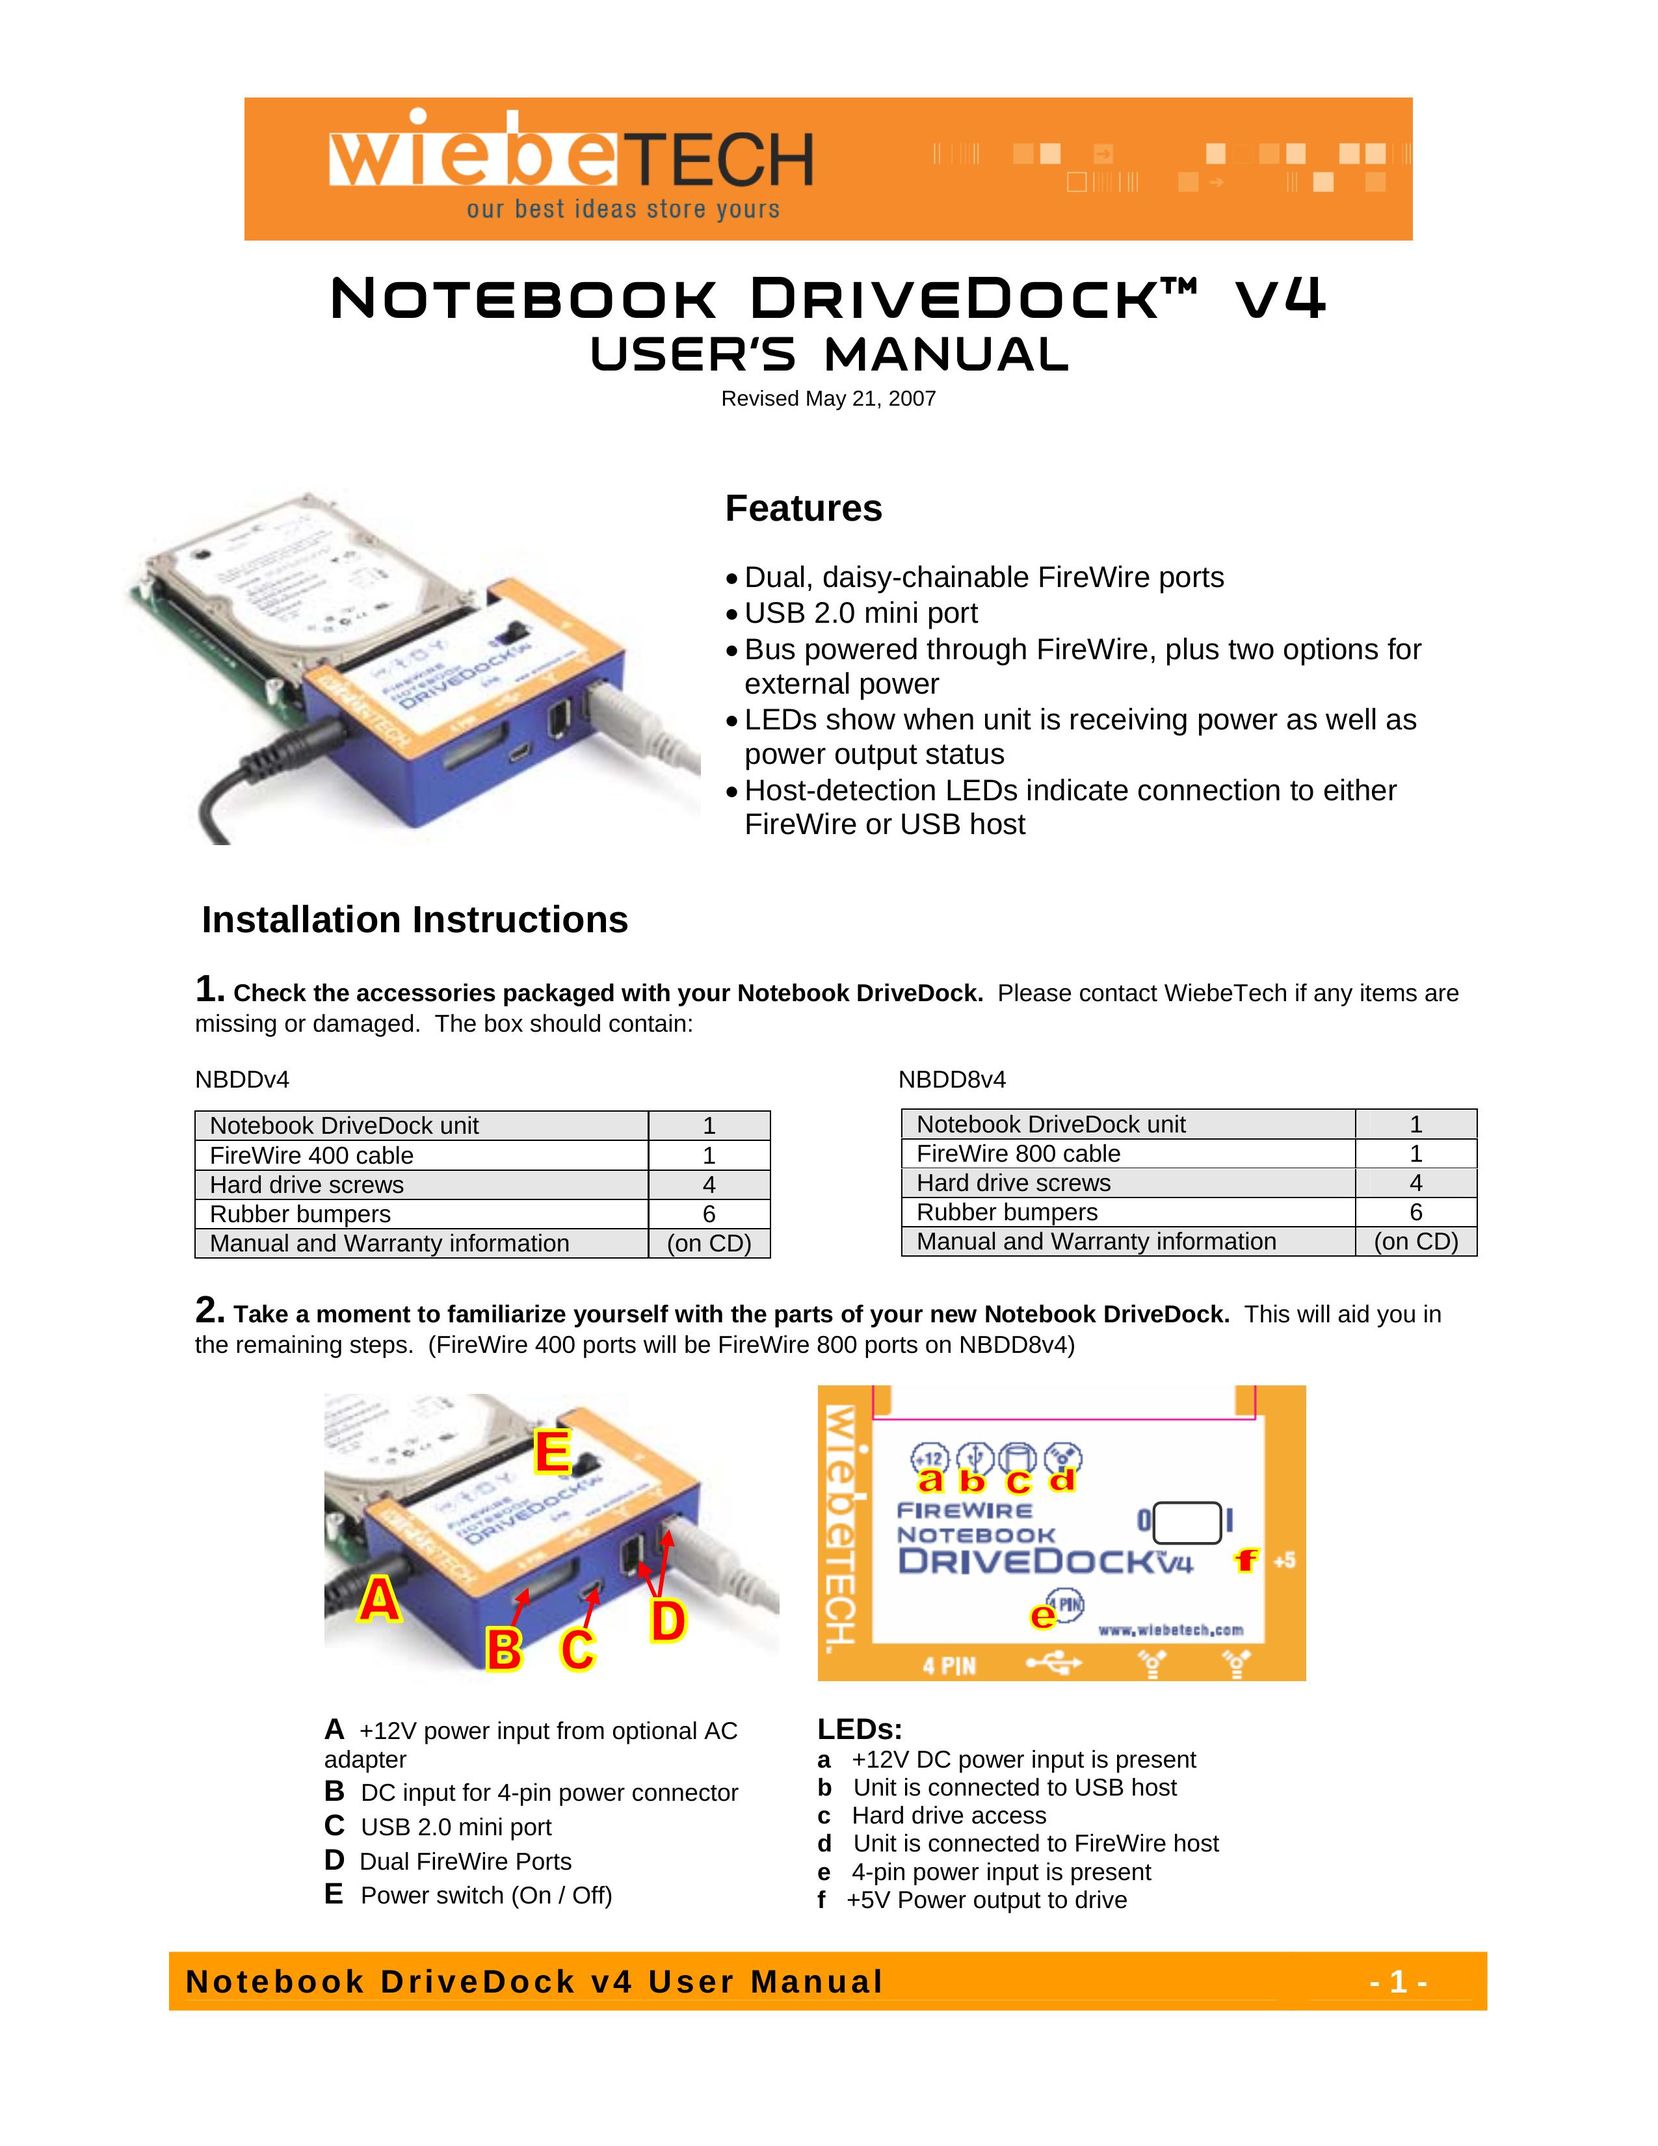 WiebeTech NBDDV4 Laptop Docking Station User Manual